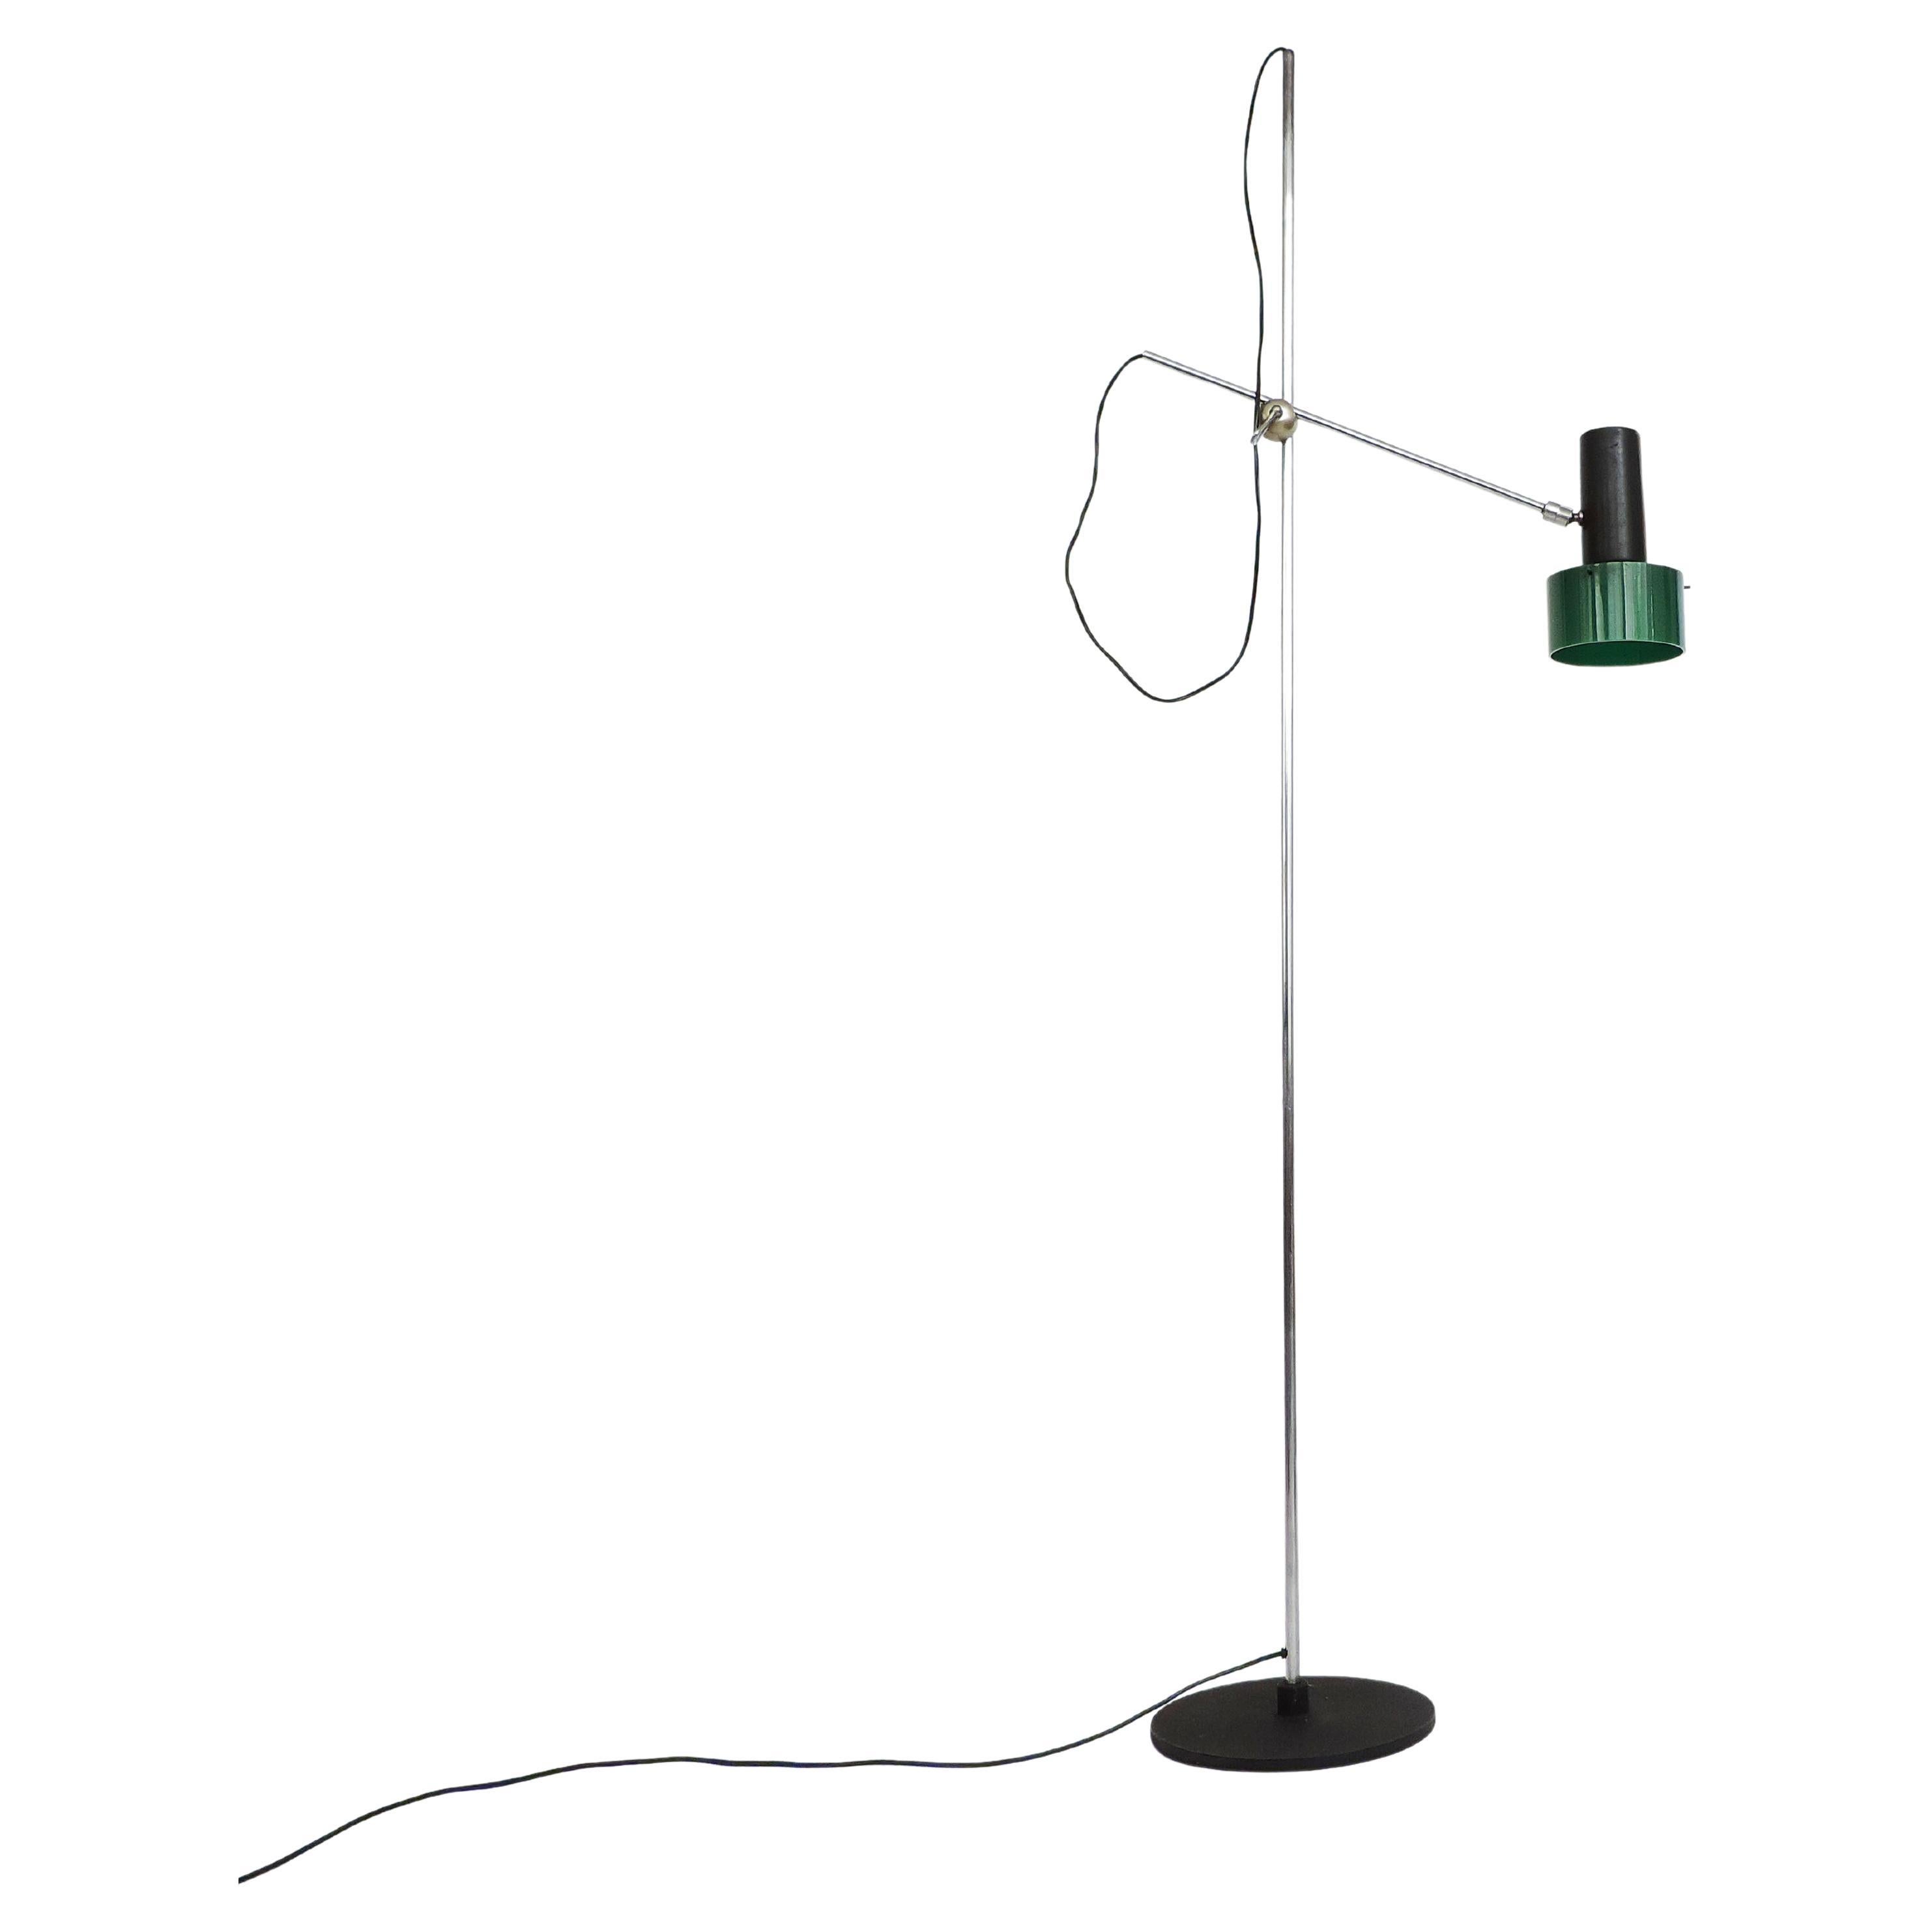 Gino Sarfatti Mod. 1083 Floor Lamp for Arteluce, Italy 1962